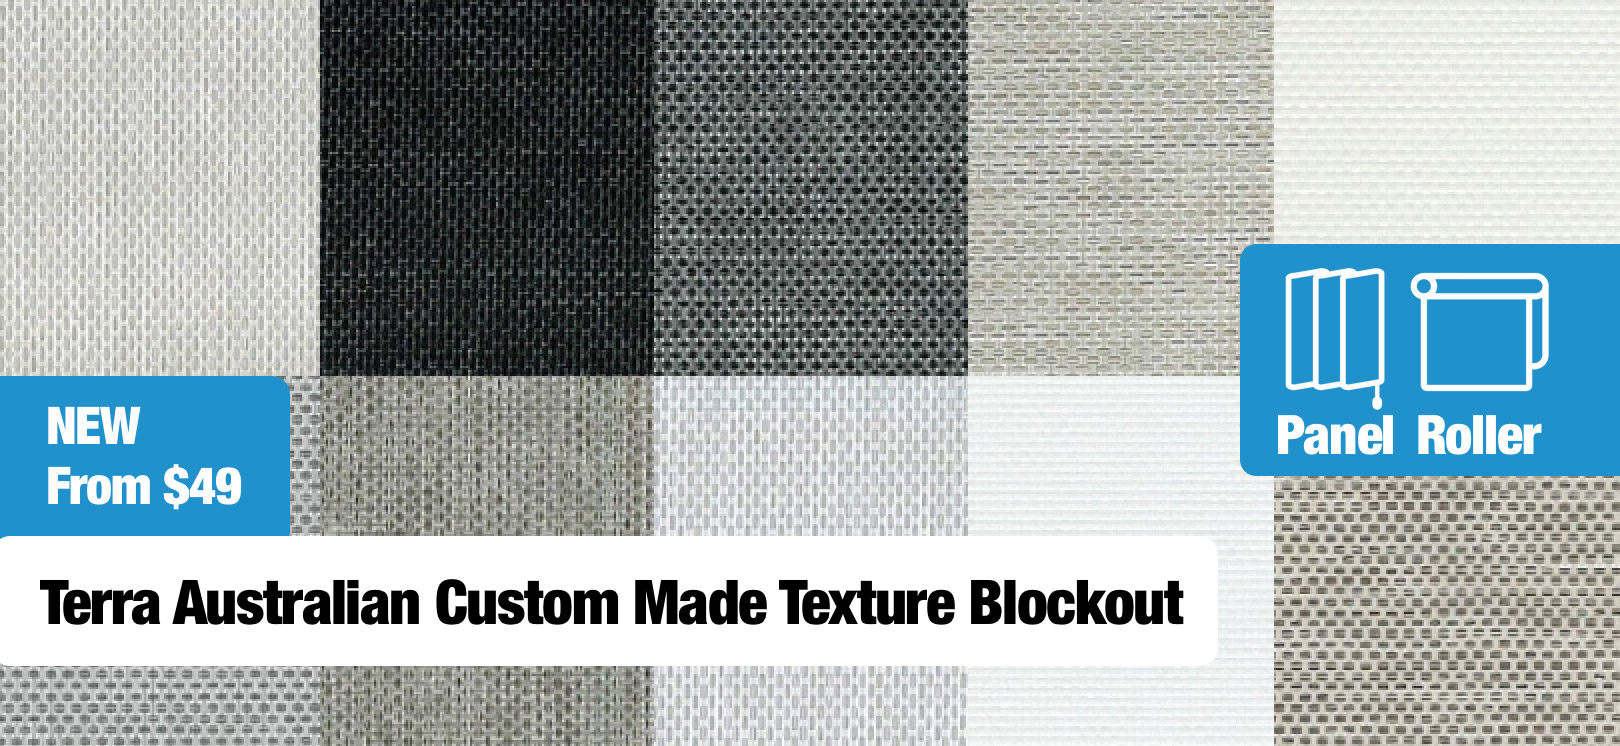 Terra Australian Custom Made Texture Blockout From $49